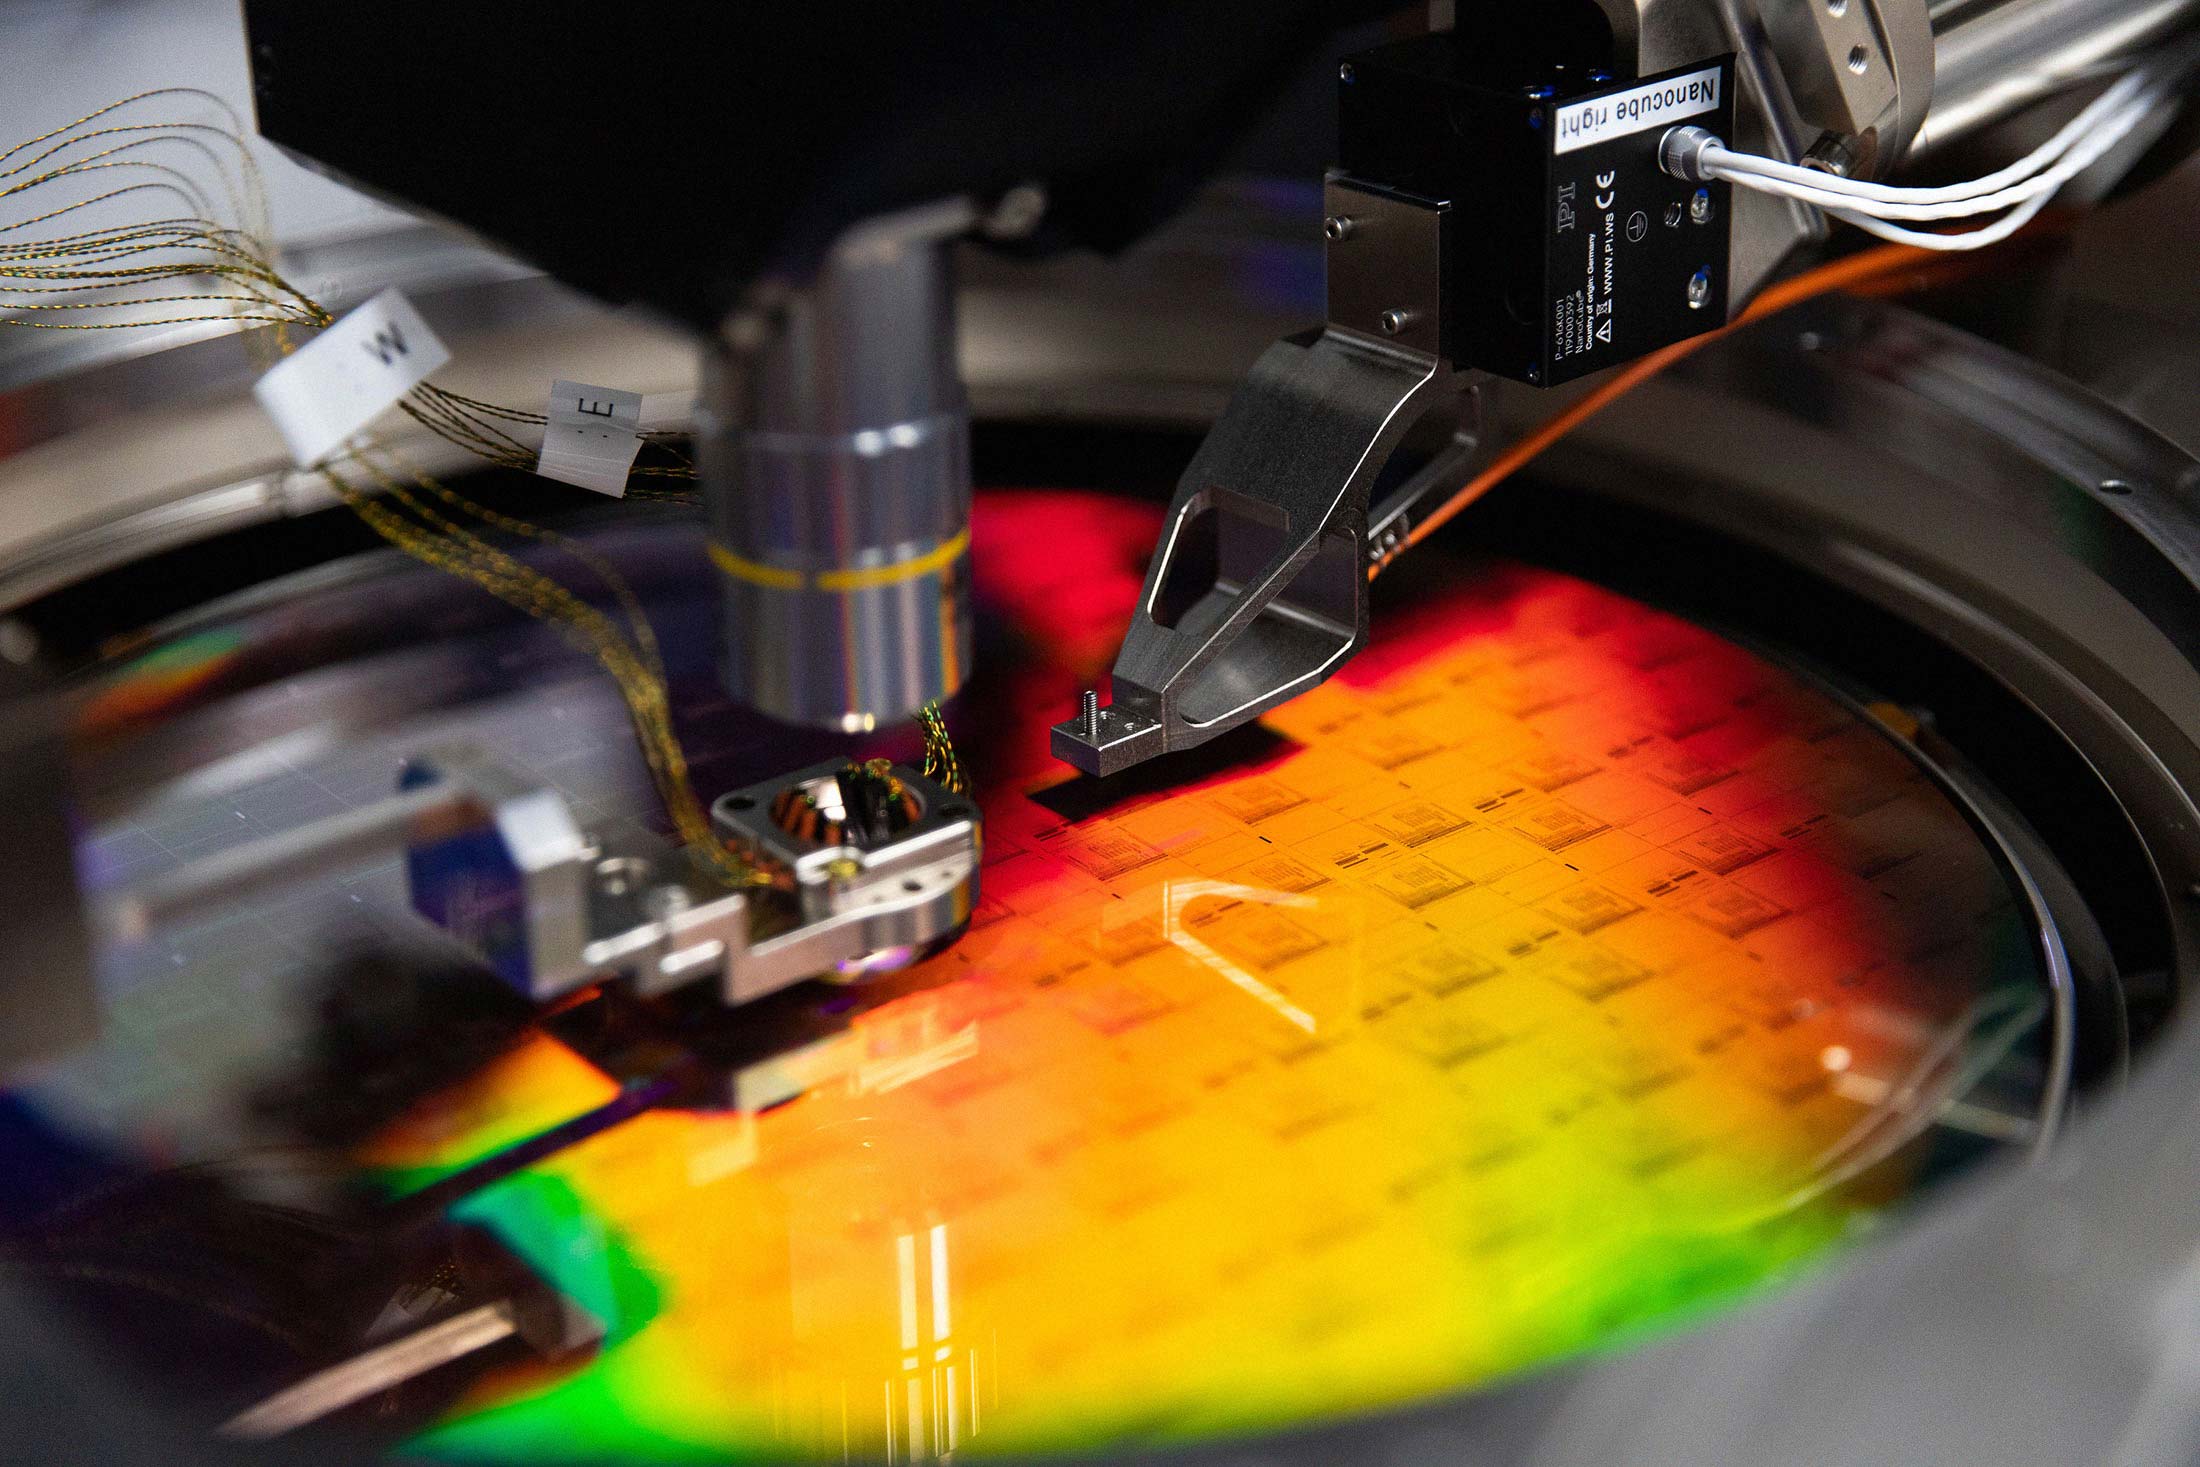 A PsiQuantum silicon wafer at the company’s lab in Palo Alto.